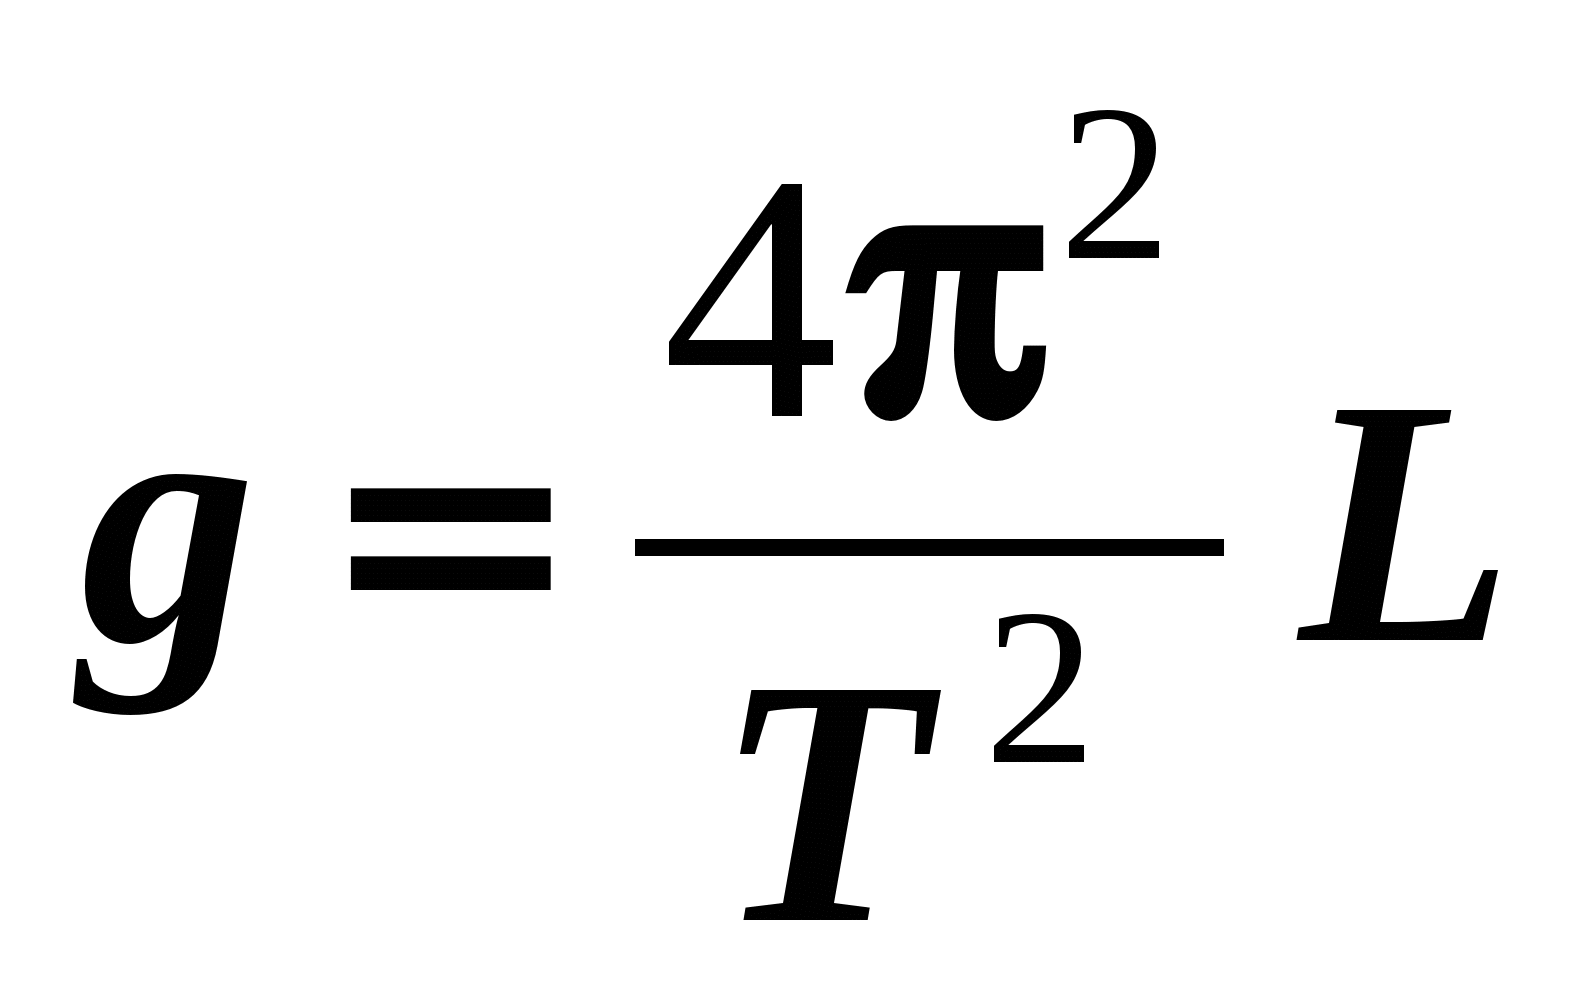 Формула никольского. Формула t 2п корень из l/g. G 4pi 2 l/t 2. T=корень l2/g. T=2п*e/g.